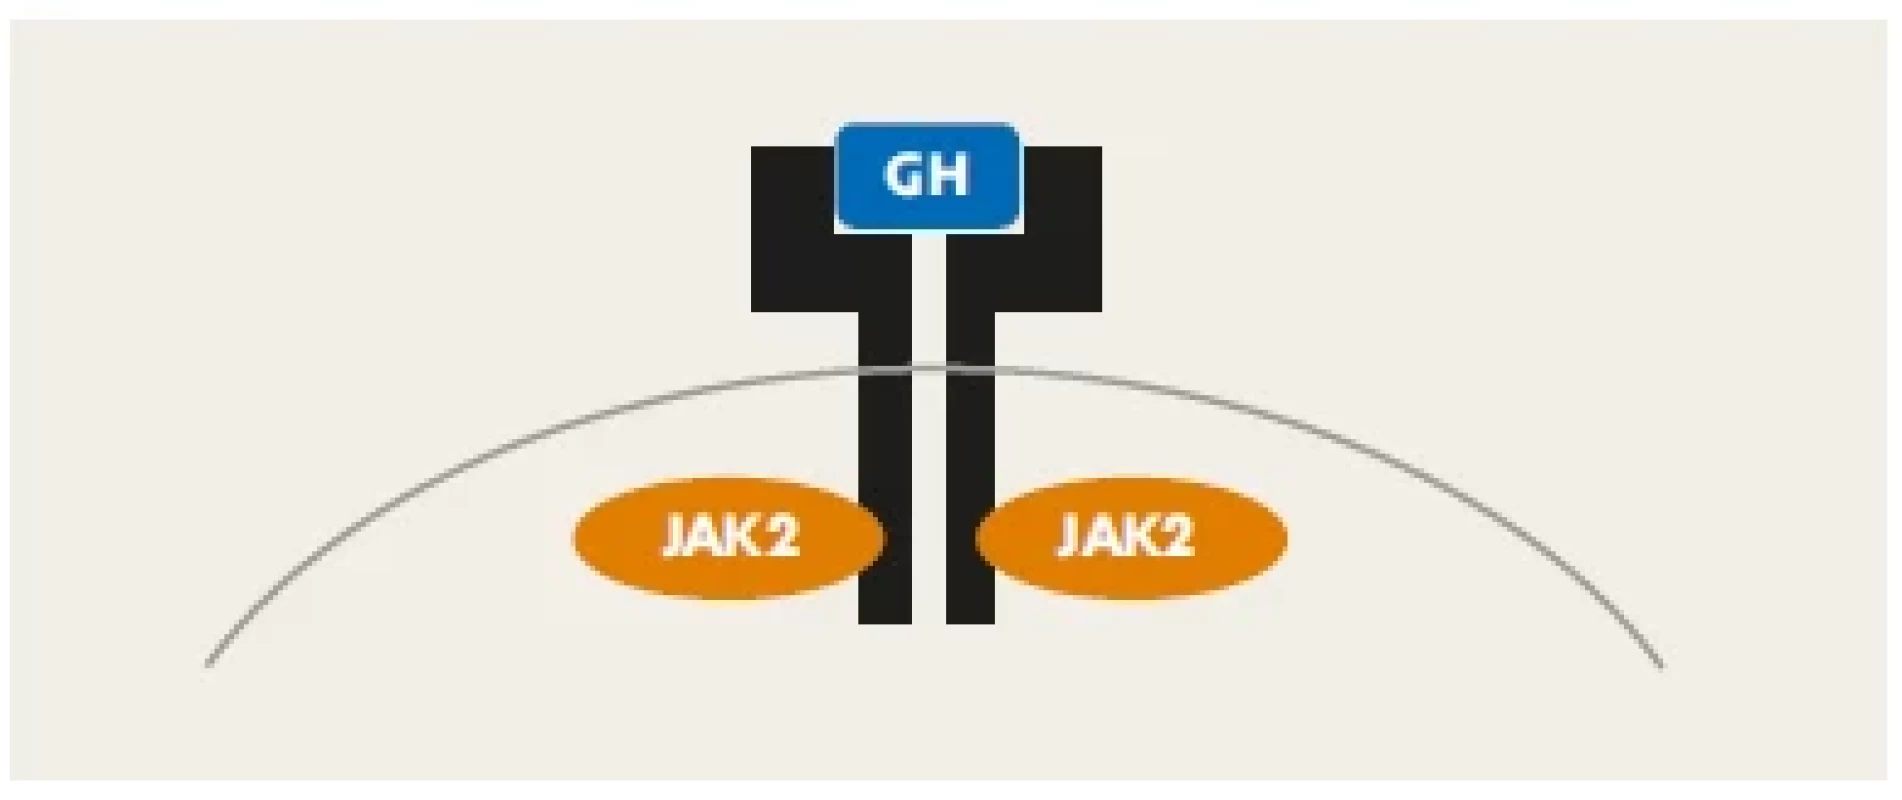 Homodimer receptoru pro růstový hormon. Vazbou molekuly
růstového hormonu (modře) se spouští JAK-STAT signalizační
kaskáda, která přenese informaci do buněčného jádra, kde změní
transkripční chování buňky.